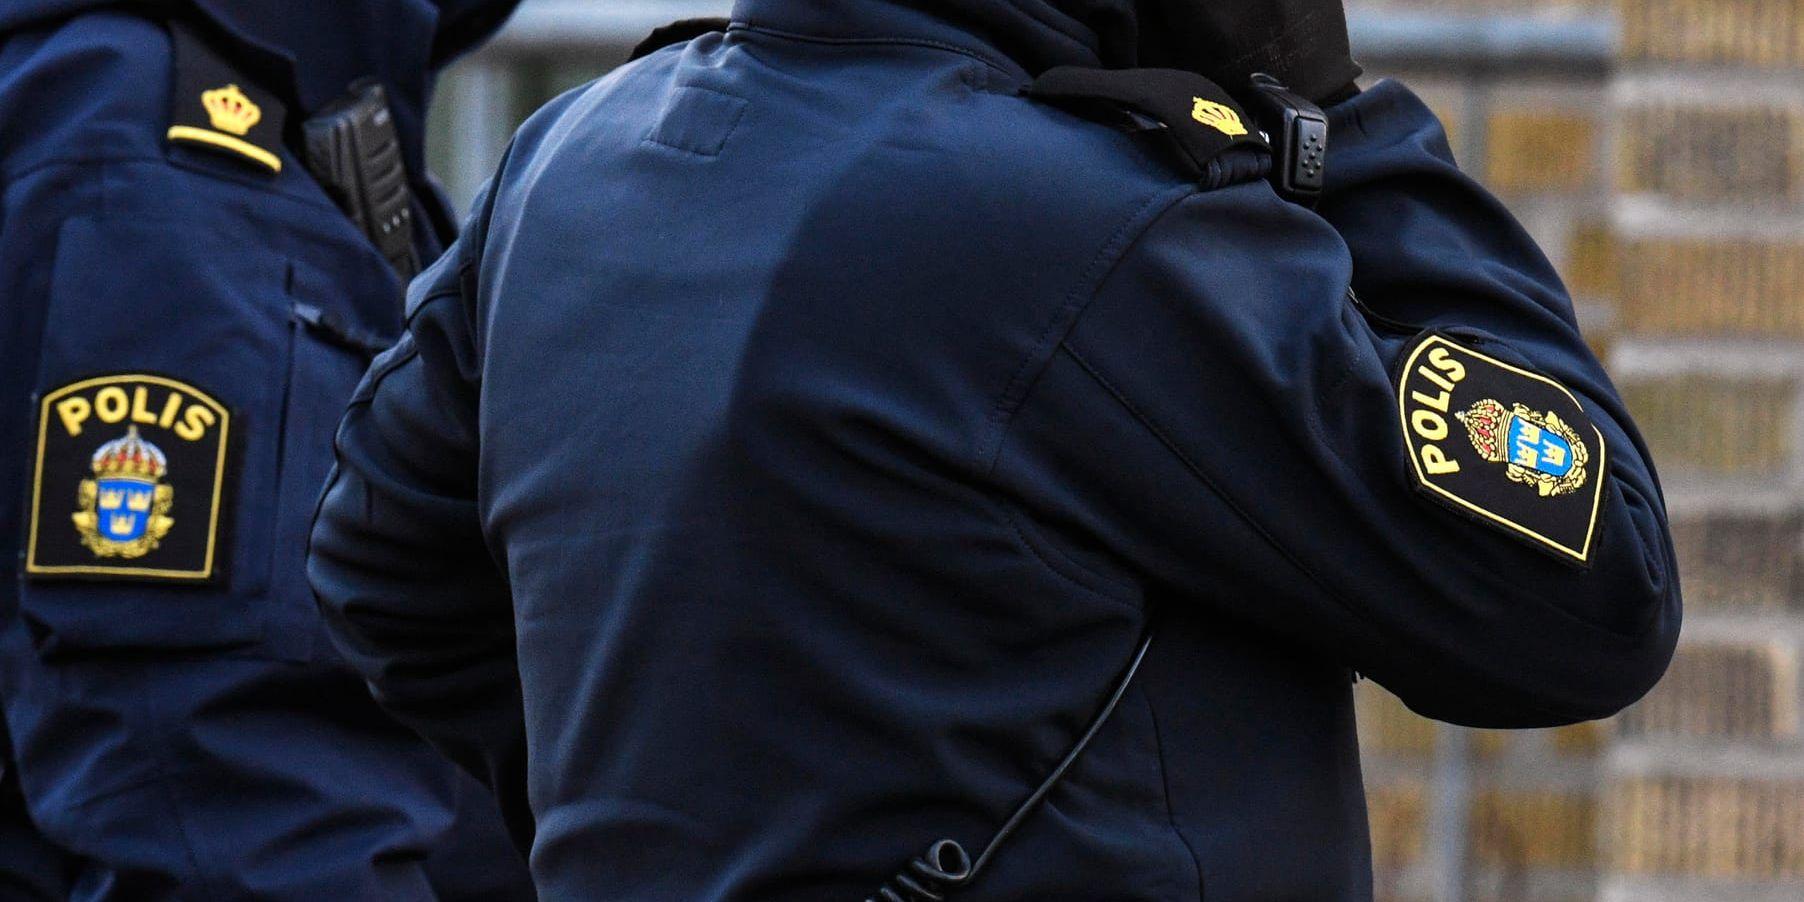 En polisman har anmälts till Justitieombudsmannen efter att ha figurerat på valaffischer iklädd uniform. Arkivbild.